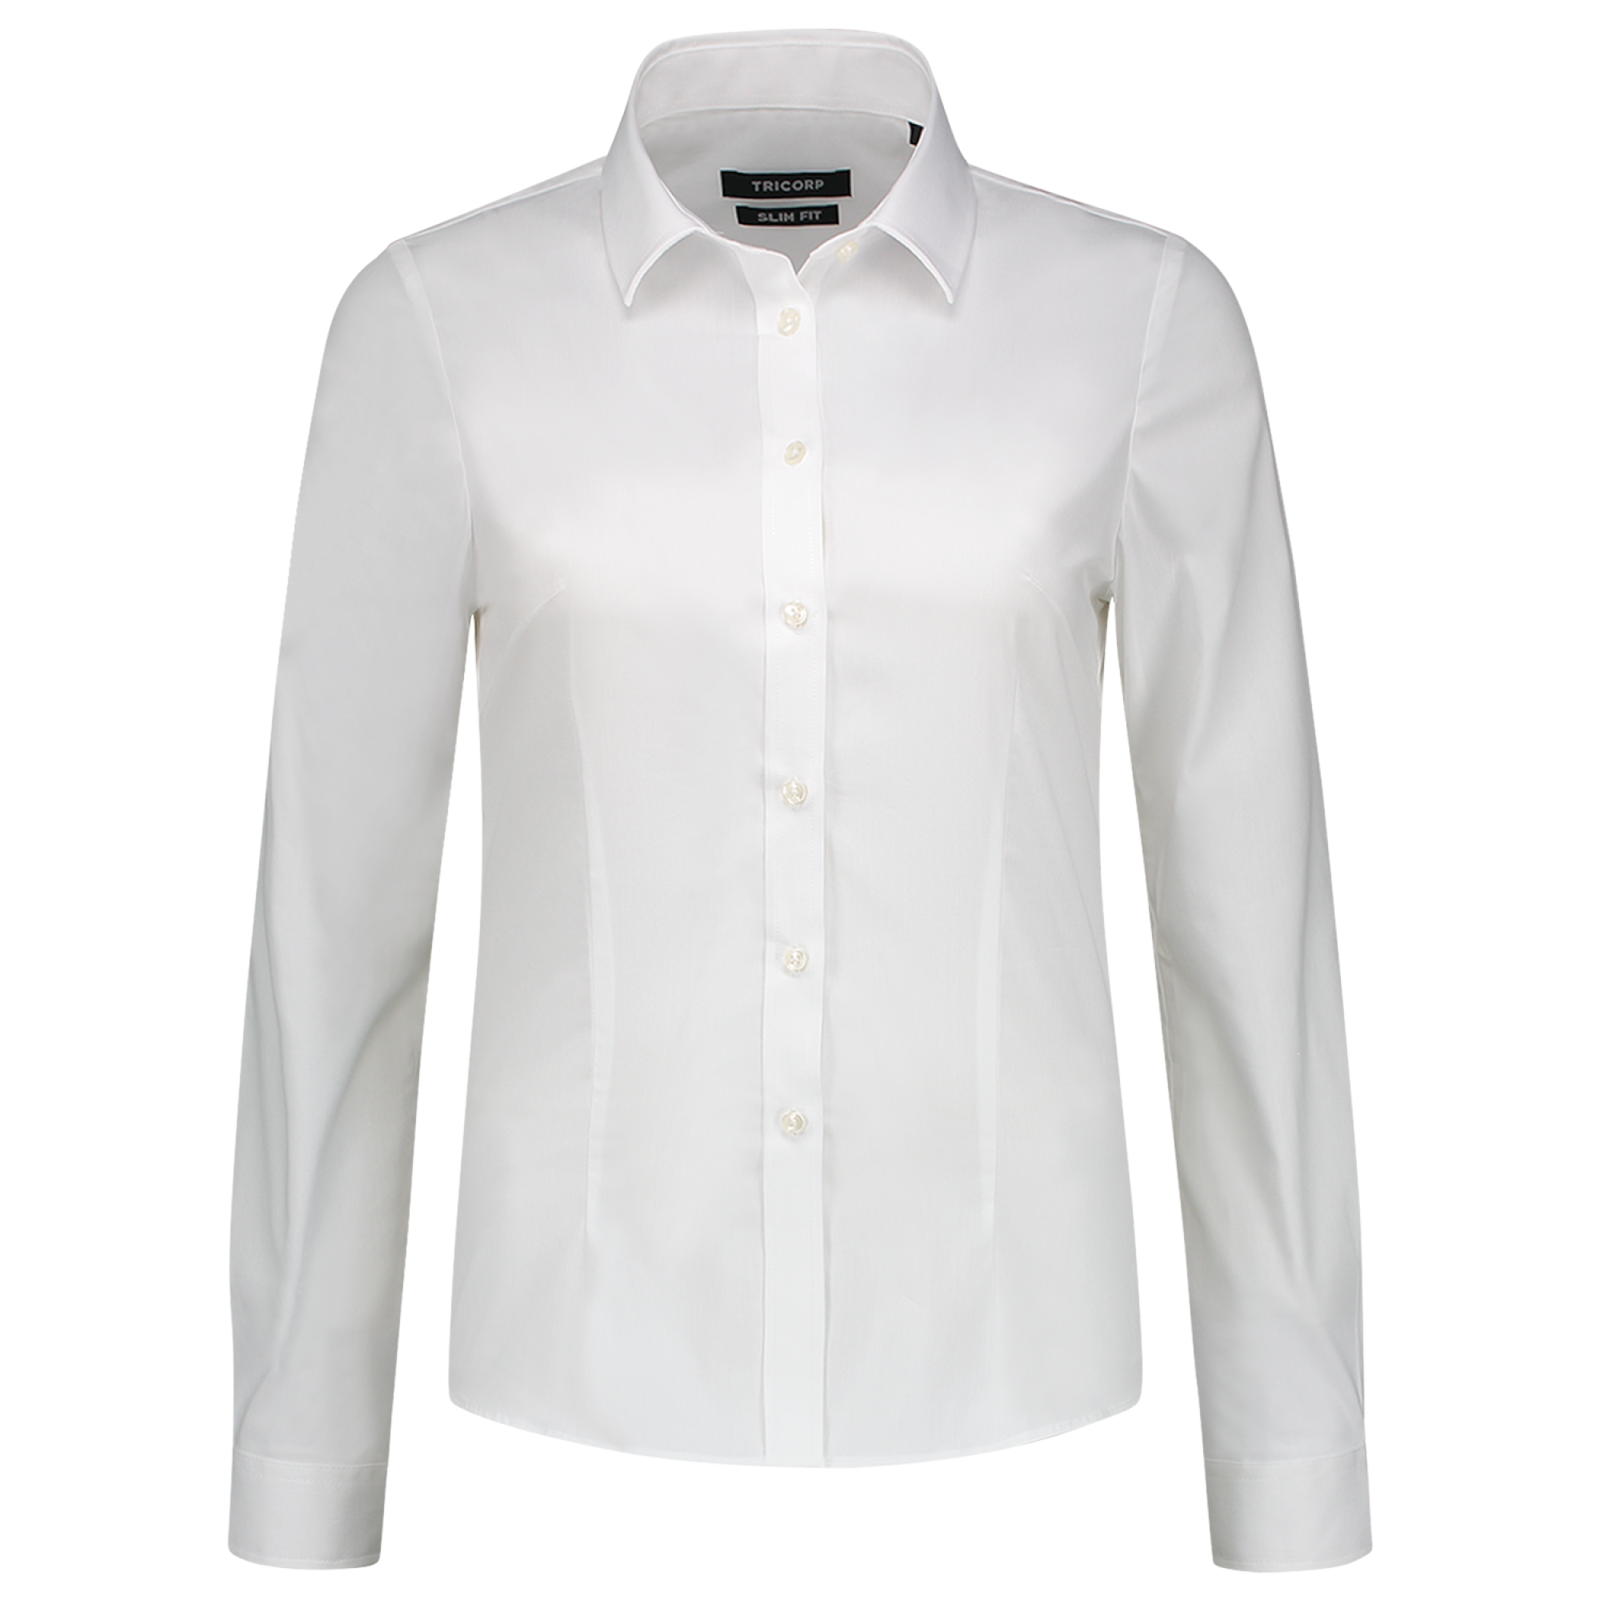 Dámska košeľa s dlhým rukávom Tricorp Fitted Stretch T24 - veľkosť: 44, farba: biela